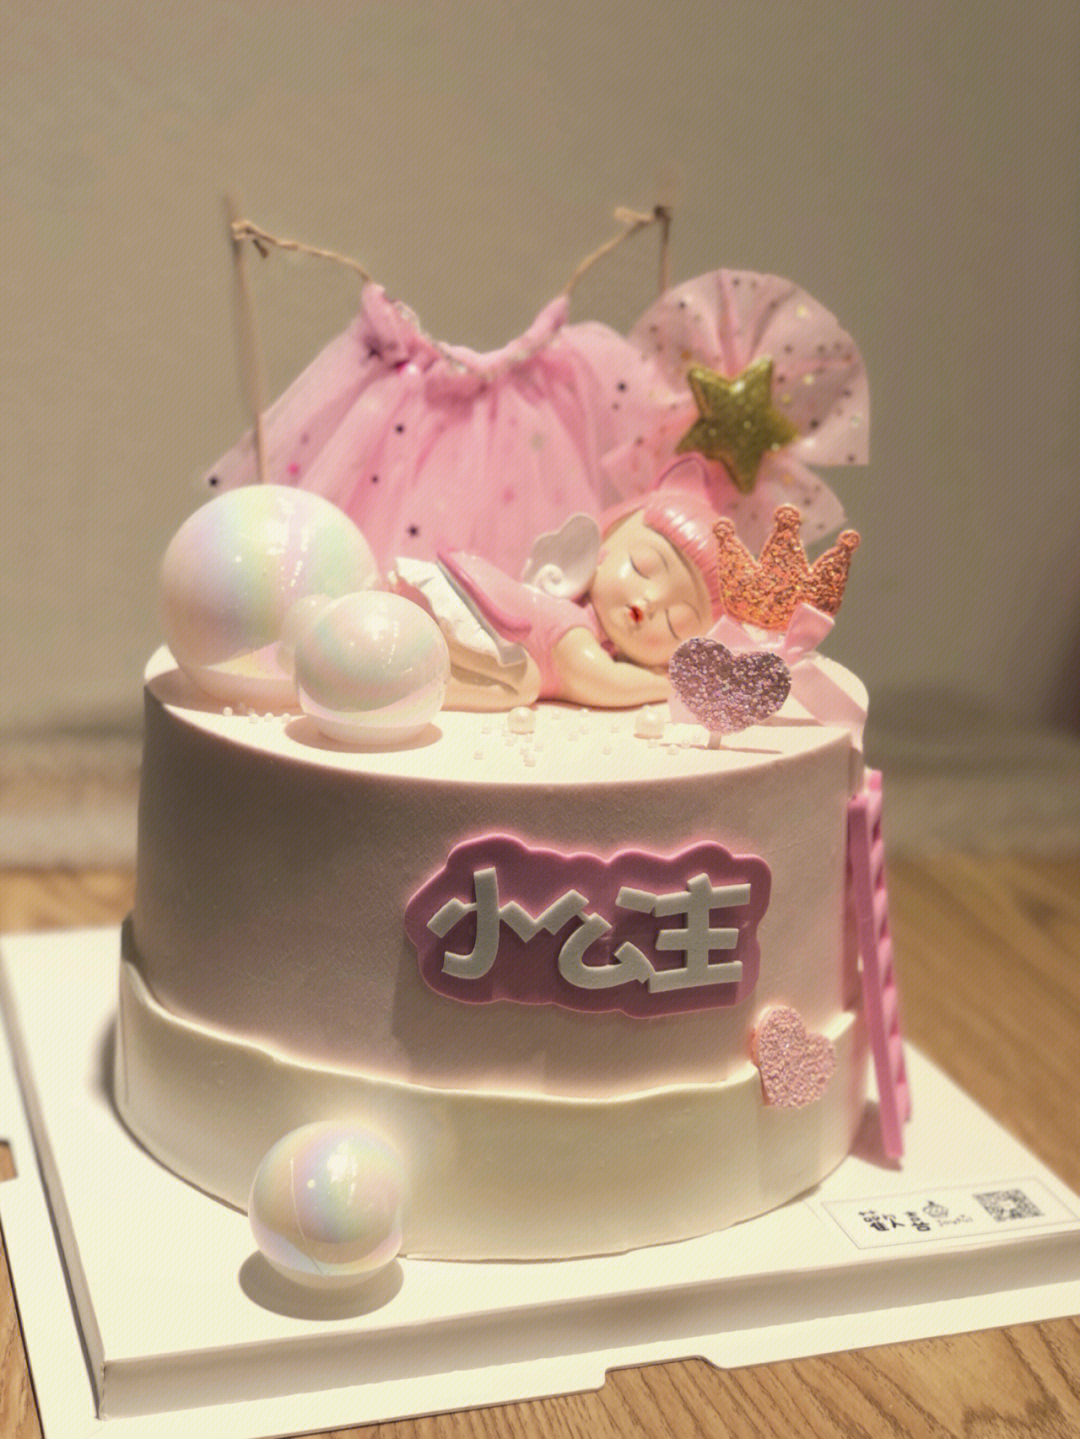 祝女儿生日快乐蛋糕图片